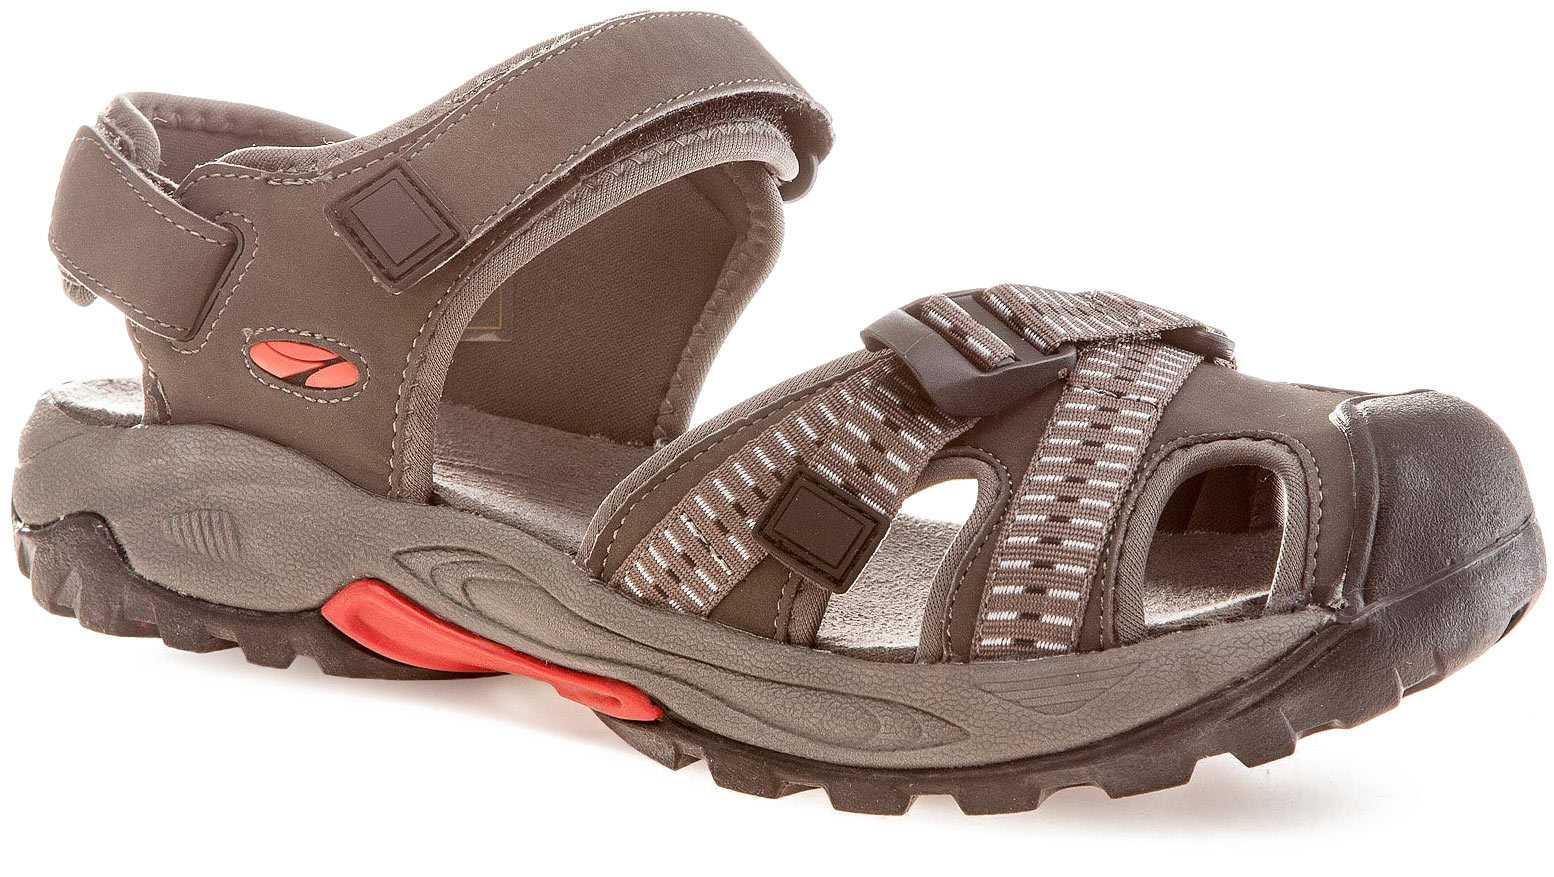 Men’s trekking sandals